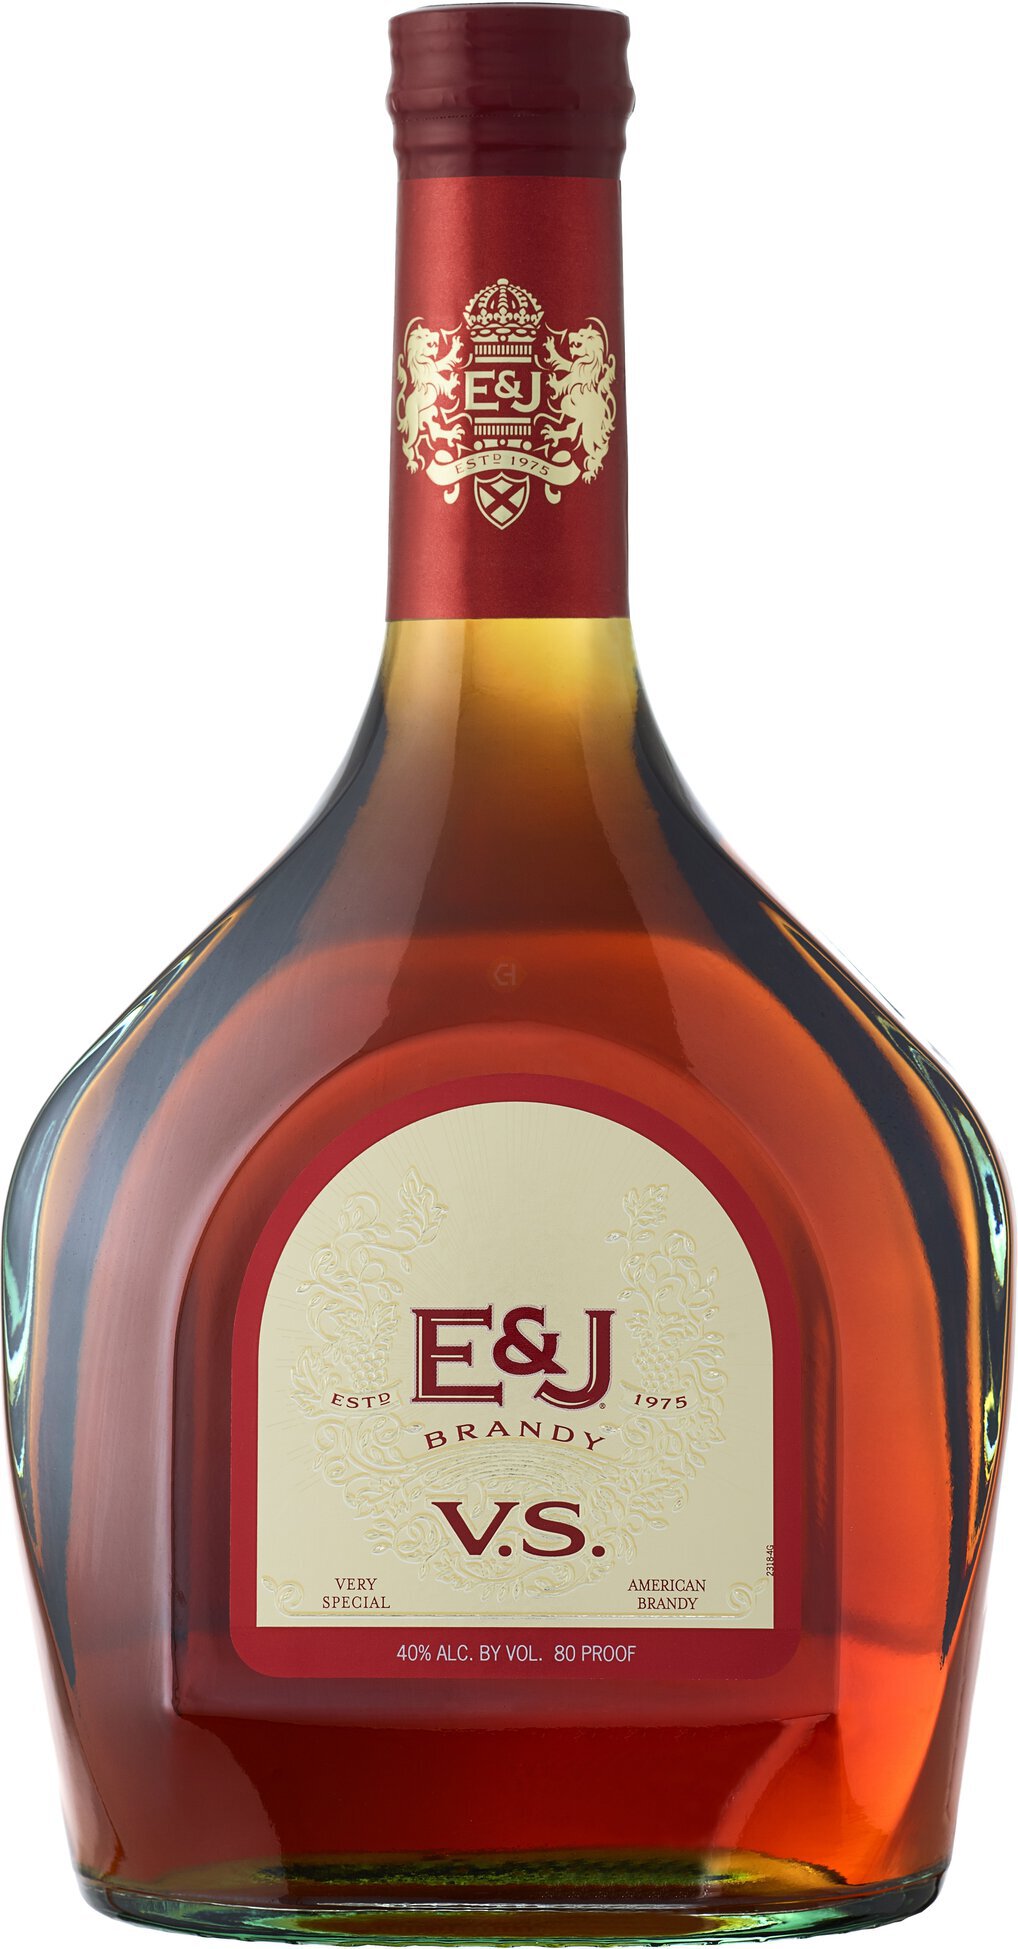 E&J V.S. Original Brandy 750ml